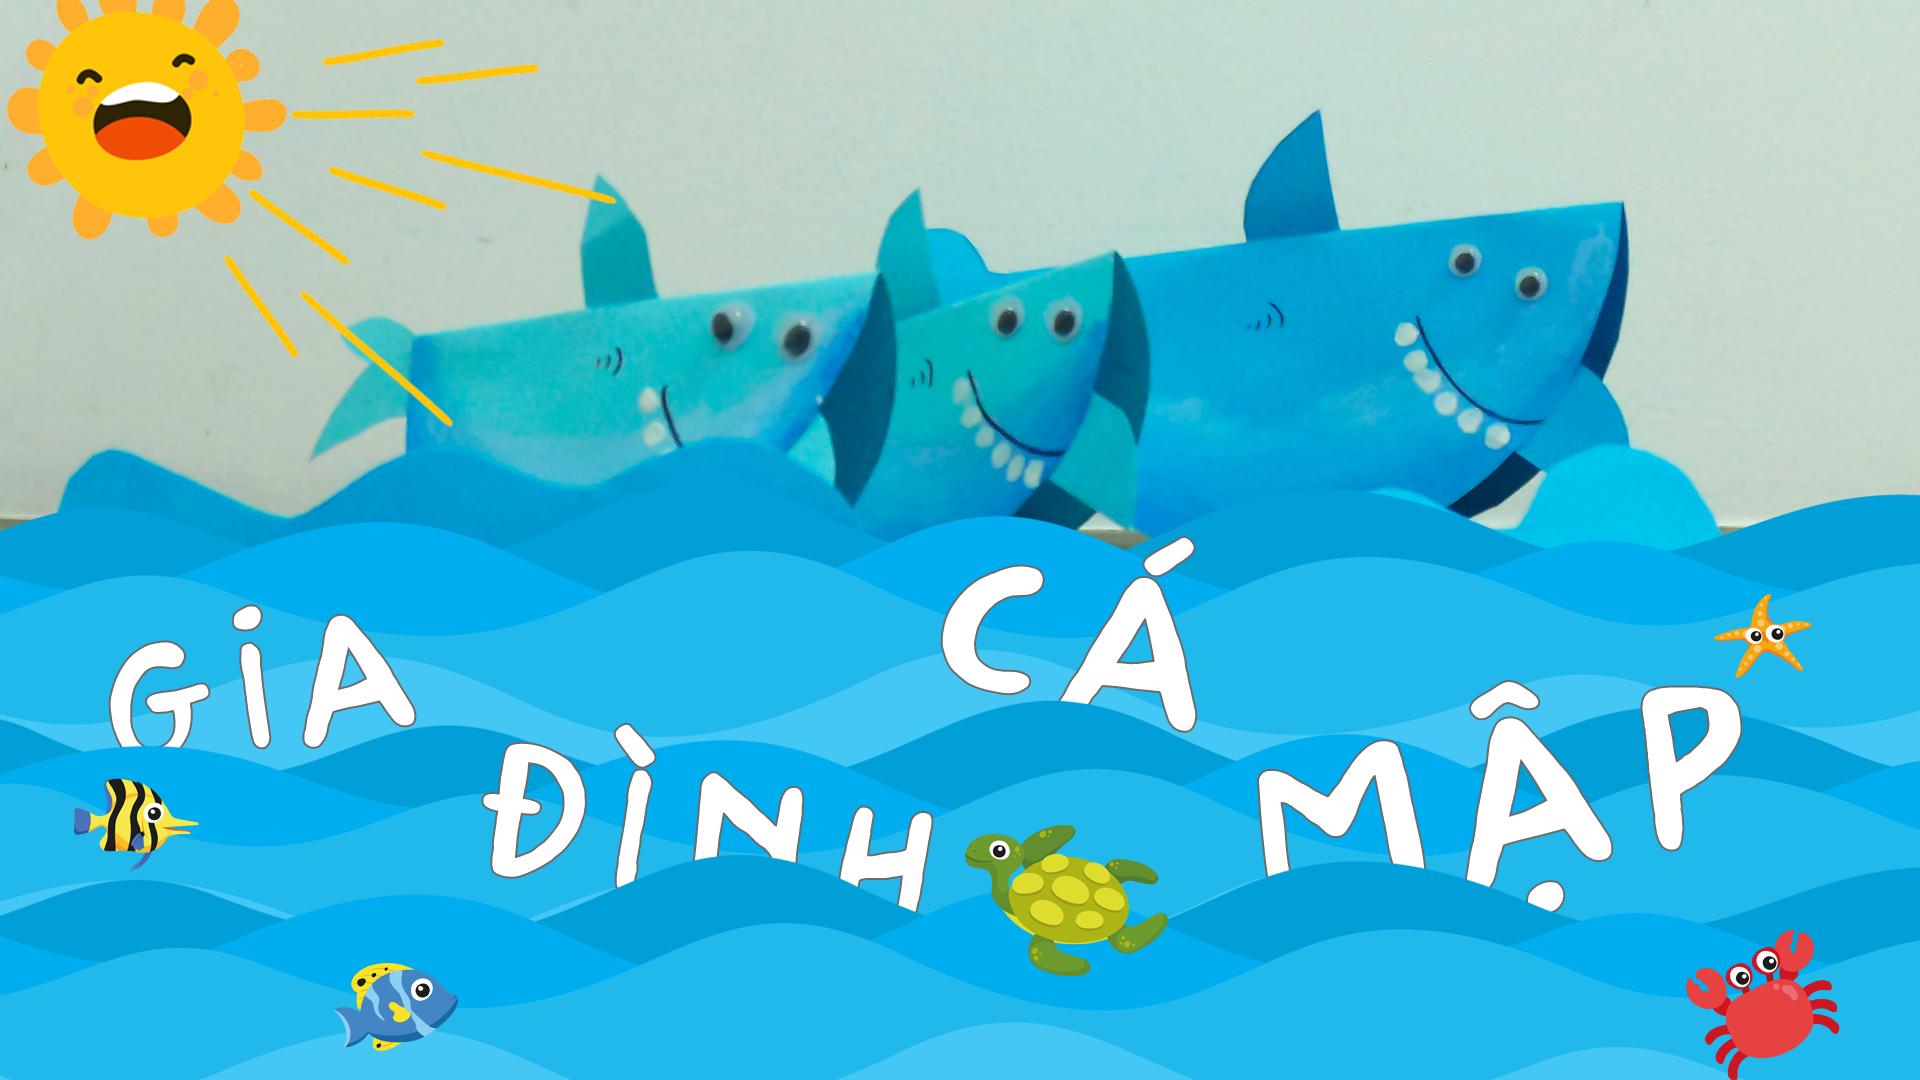 Hãy cùng tạo ra một gia đình cá mập đáng yêu từ giấy. Trẻ em sẽ học cách tạo hình và kết hợp từng phần để tạo ra một tác phẩm nghệ thuật đầy màu sắc và tươi vui.